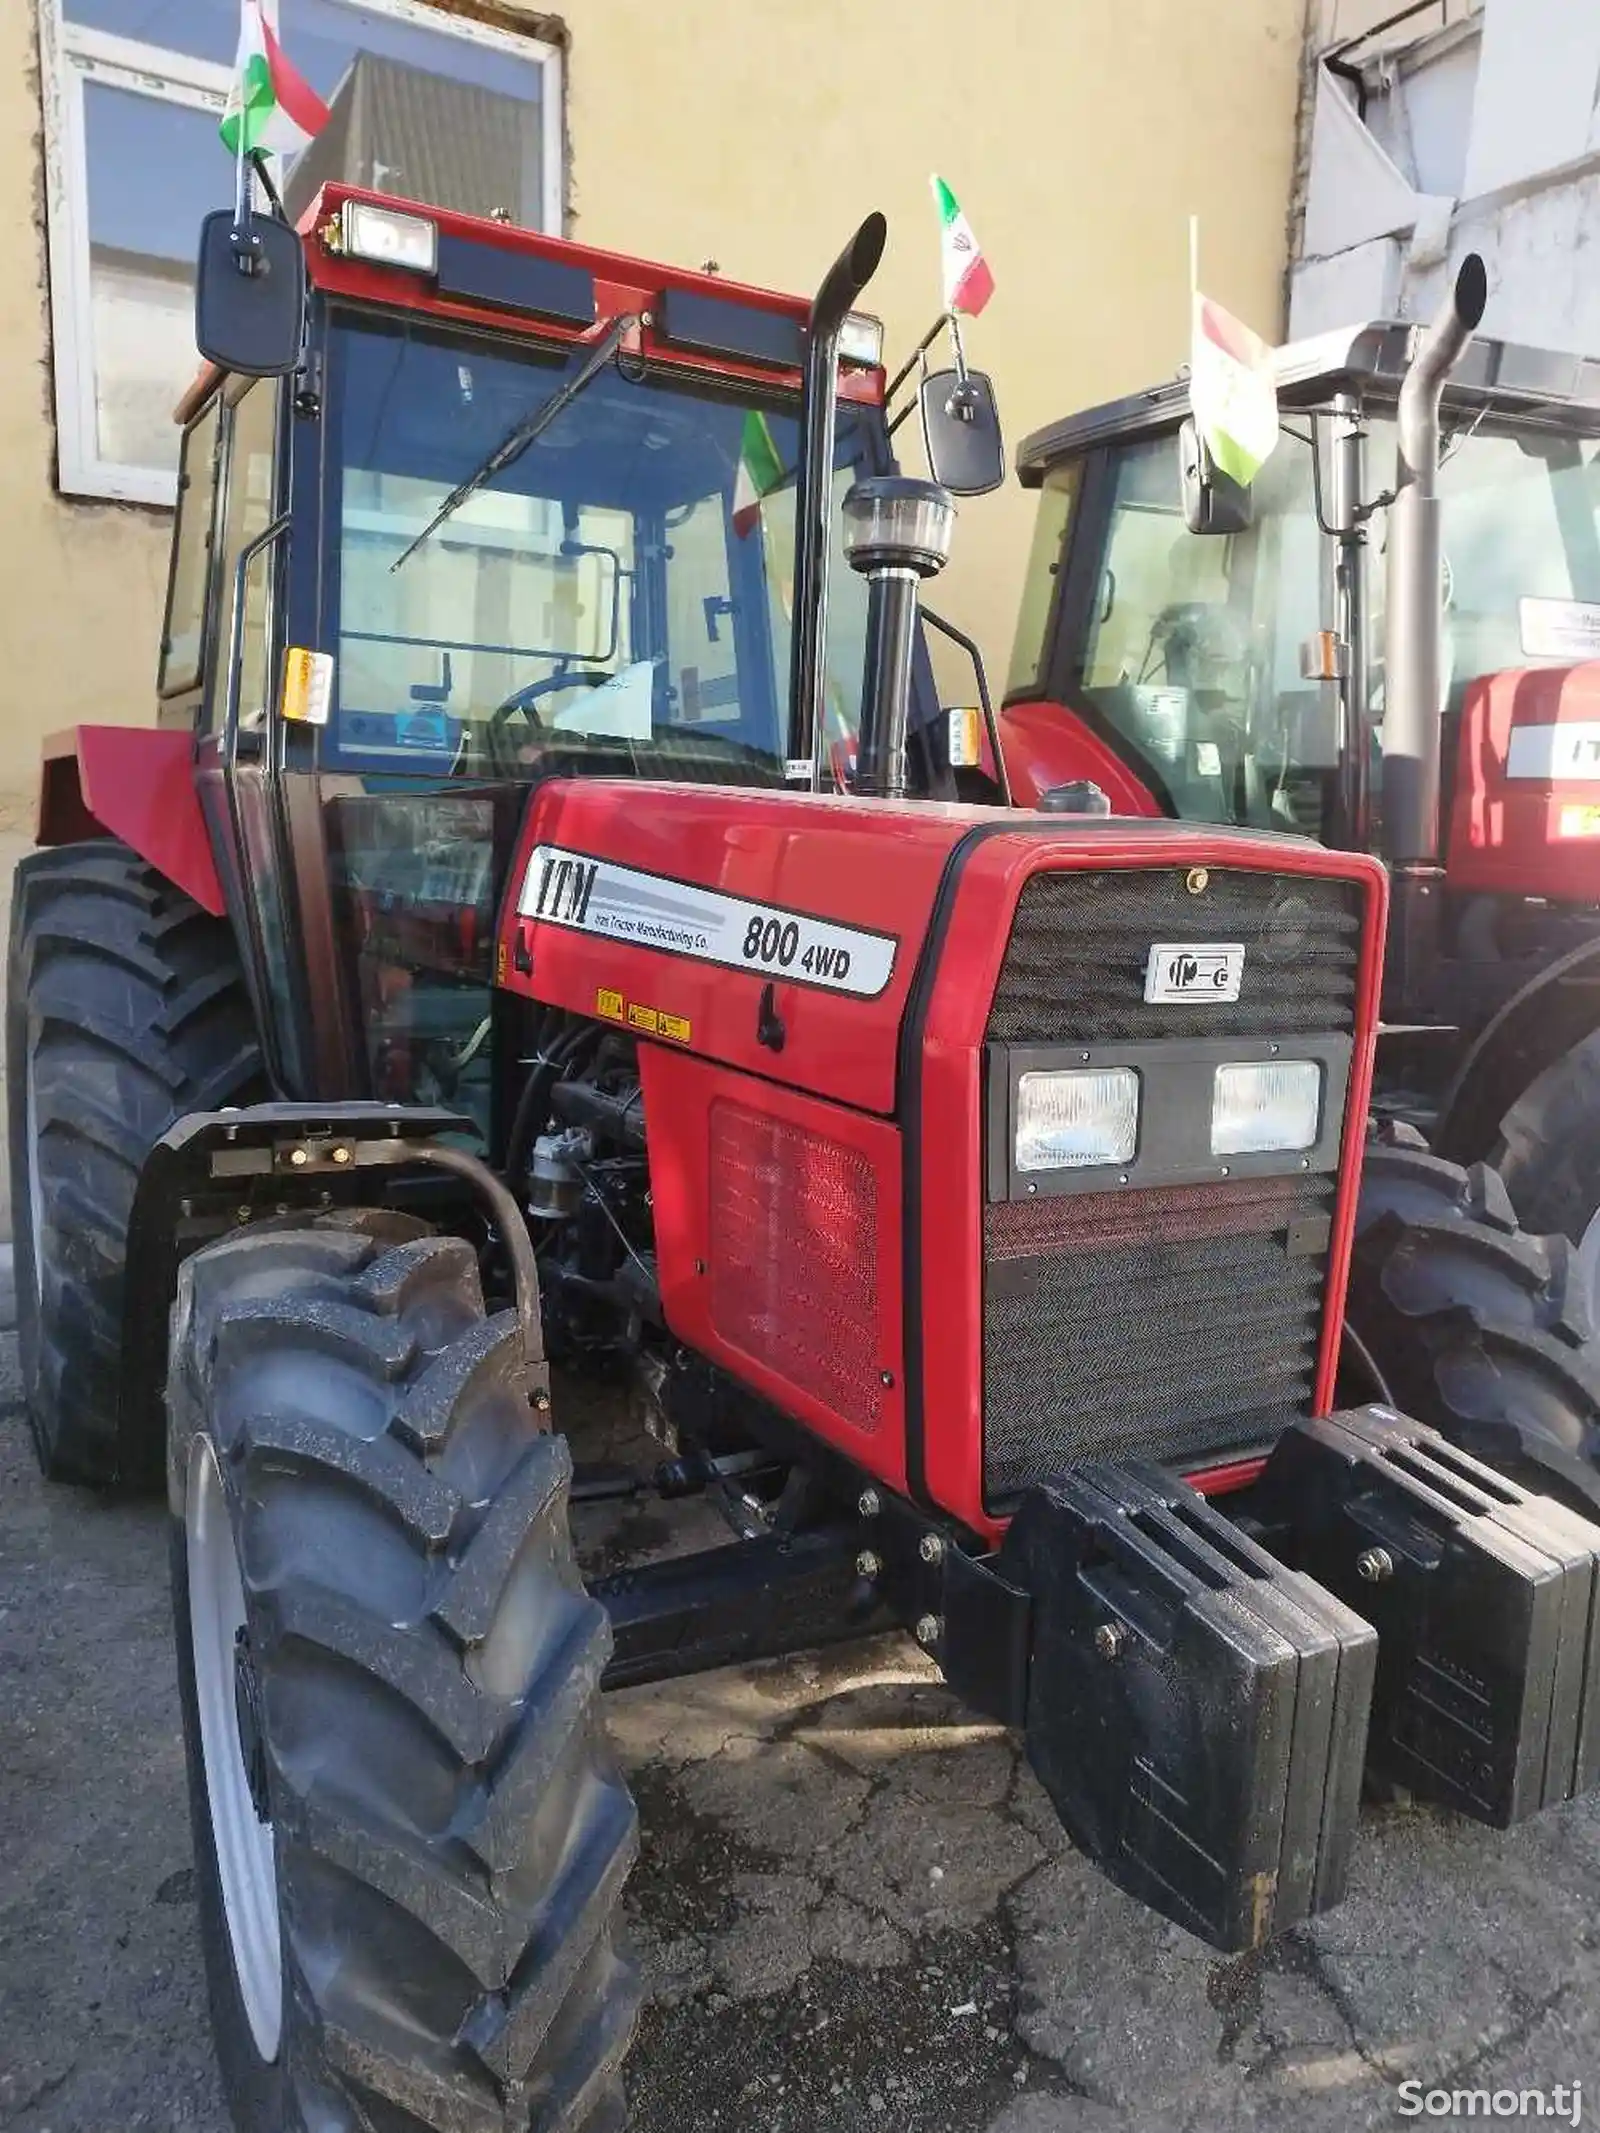 Трактор ITM 800-4wd-1